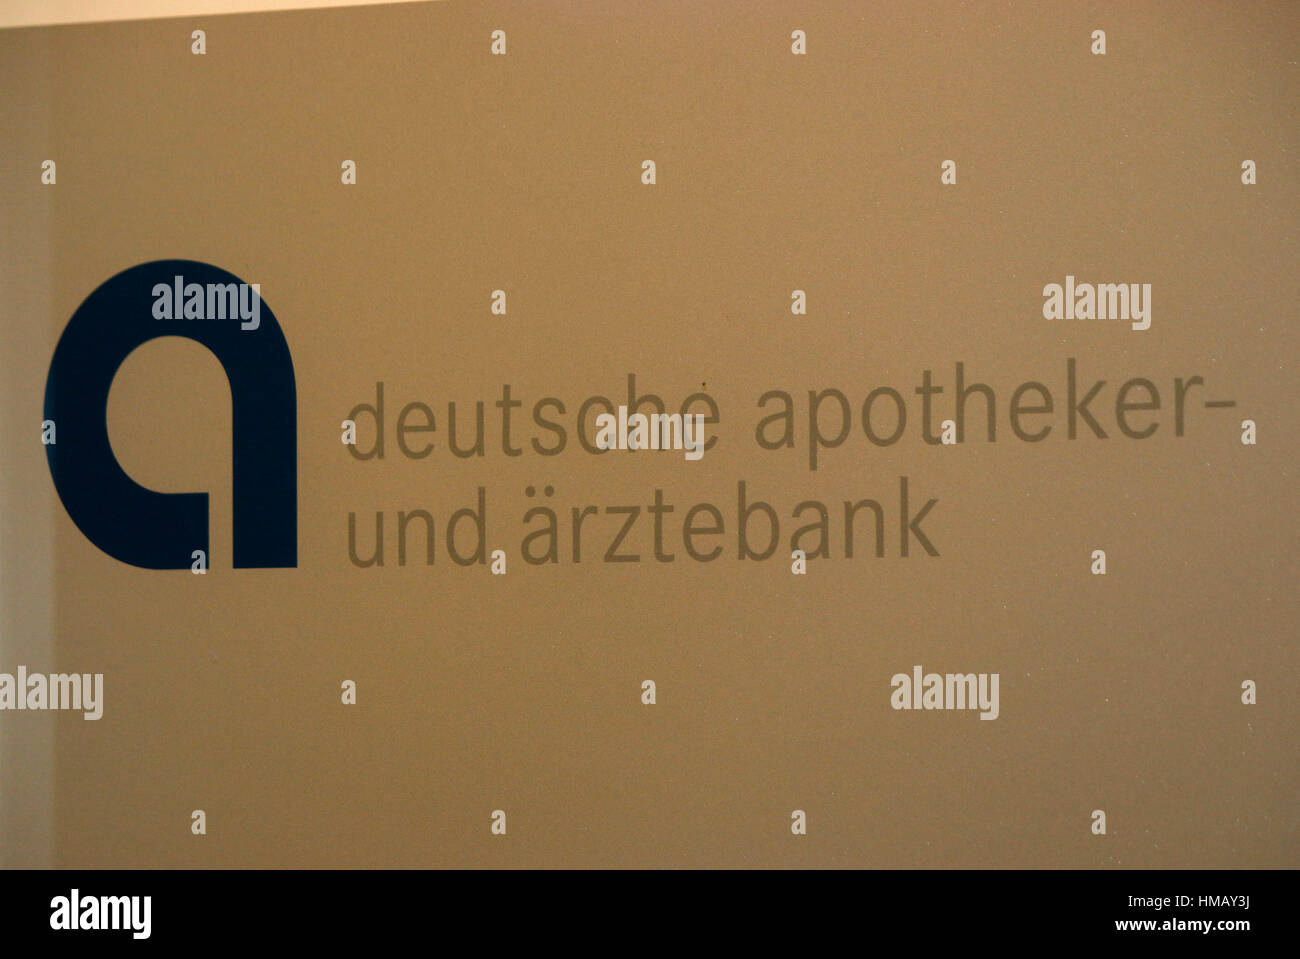 Das Logo der Marke "Deutsche Apotheken Und Aerztebank", Berlin. Stockfoto